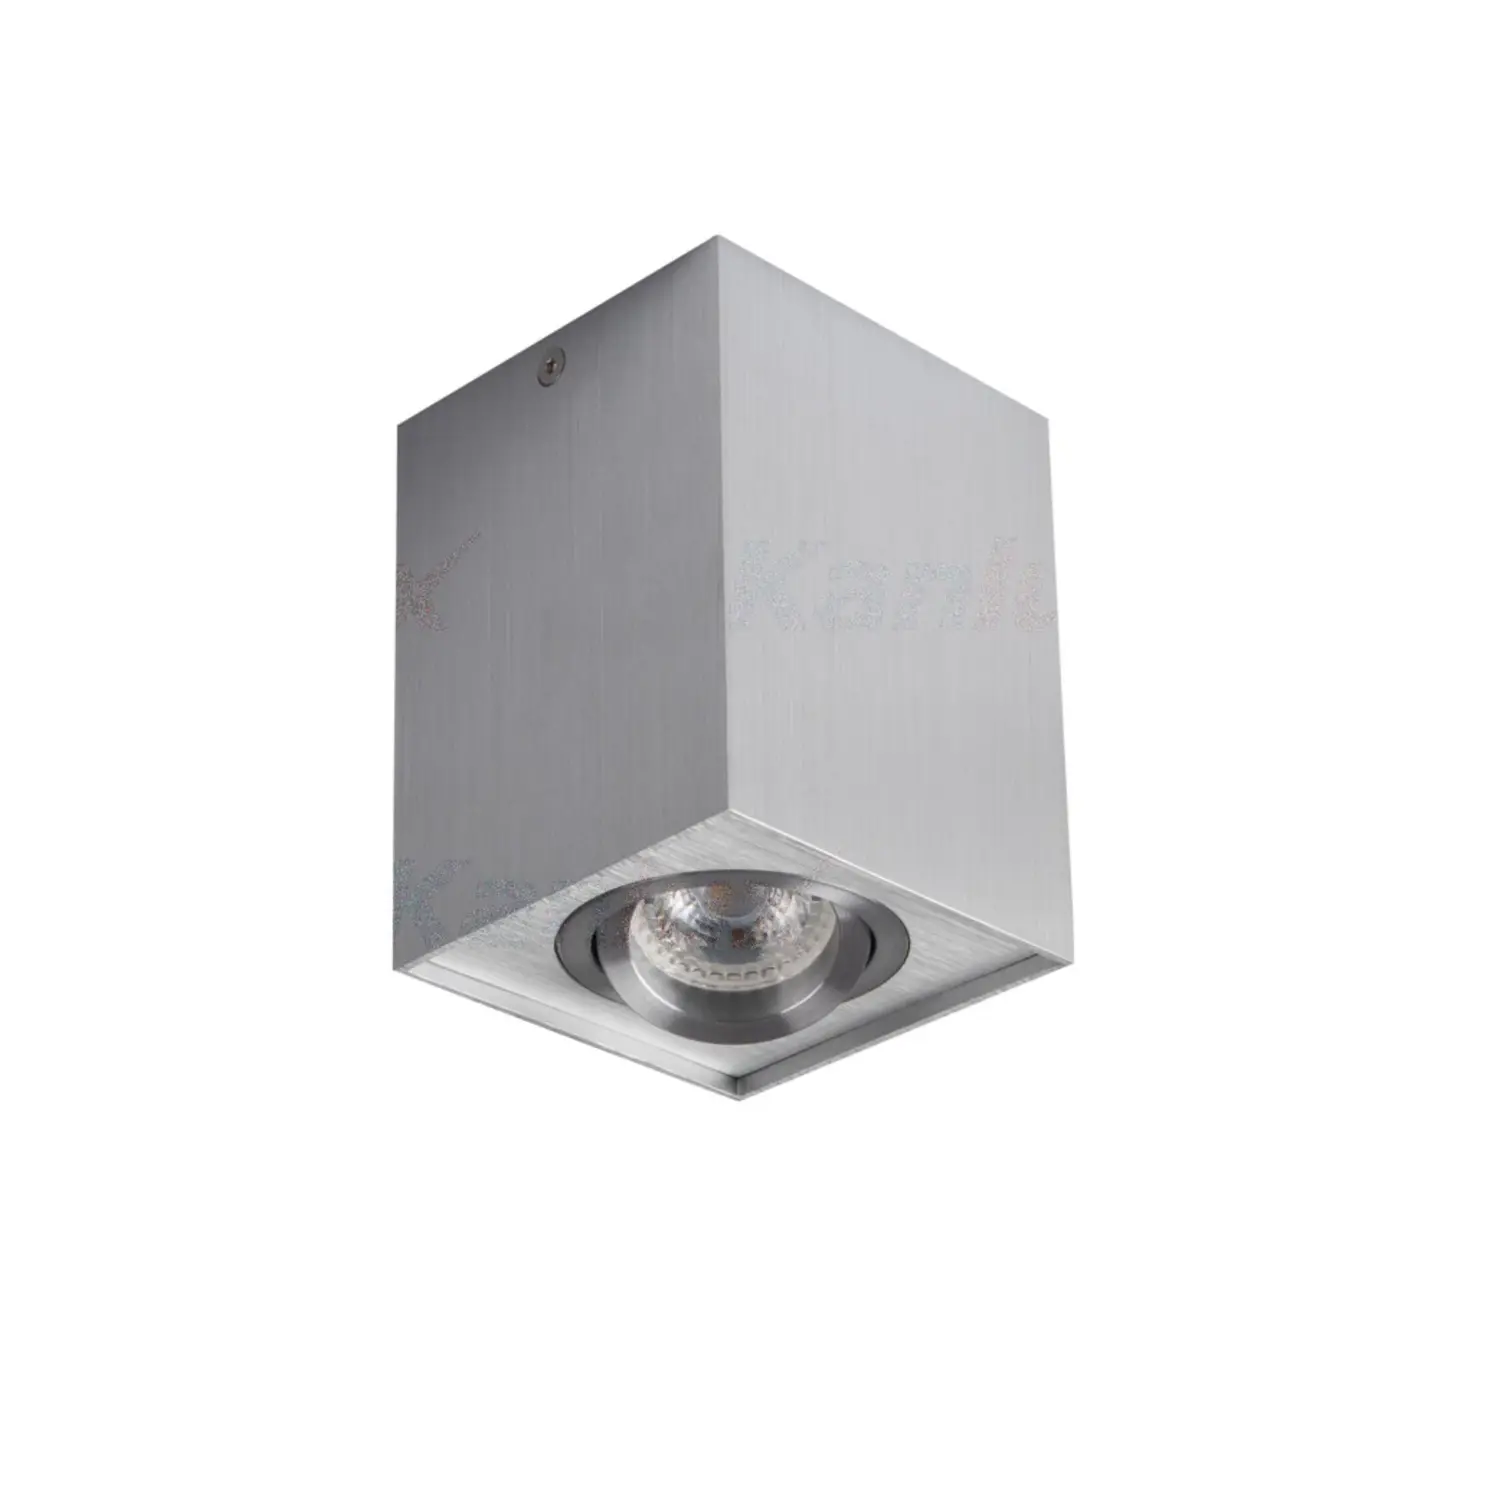 immagine del prodotto faretto da soffitto orientabile IP20 interno GU10 CE alluminio spazzolato 220-240 volt 1 luce kan 25472